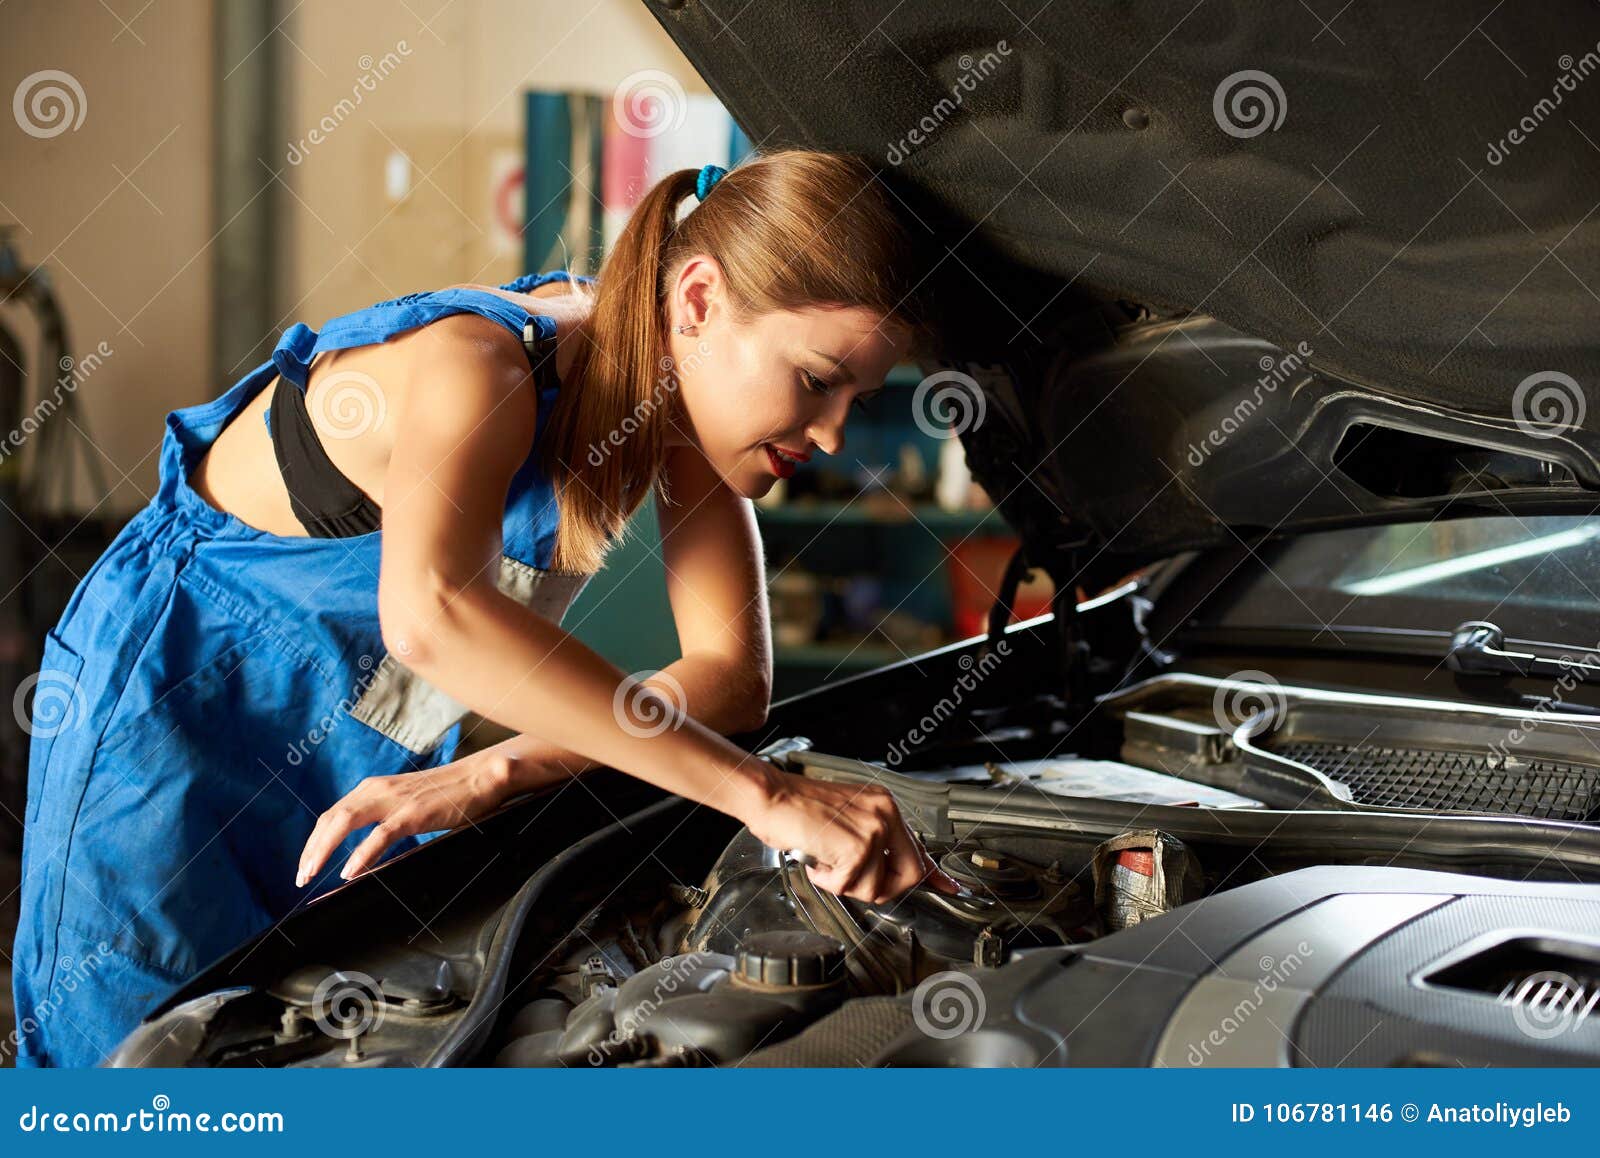 Девушка чинит машину. Девушка ремонтирует машину. Женщина автомеханик. Девушка автослесарь.